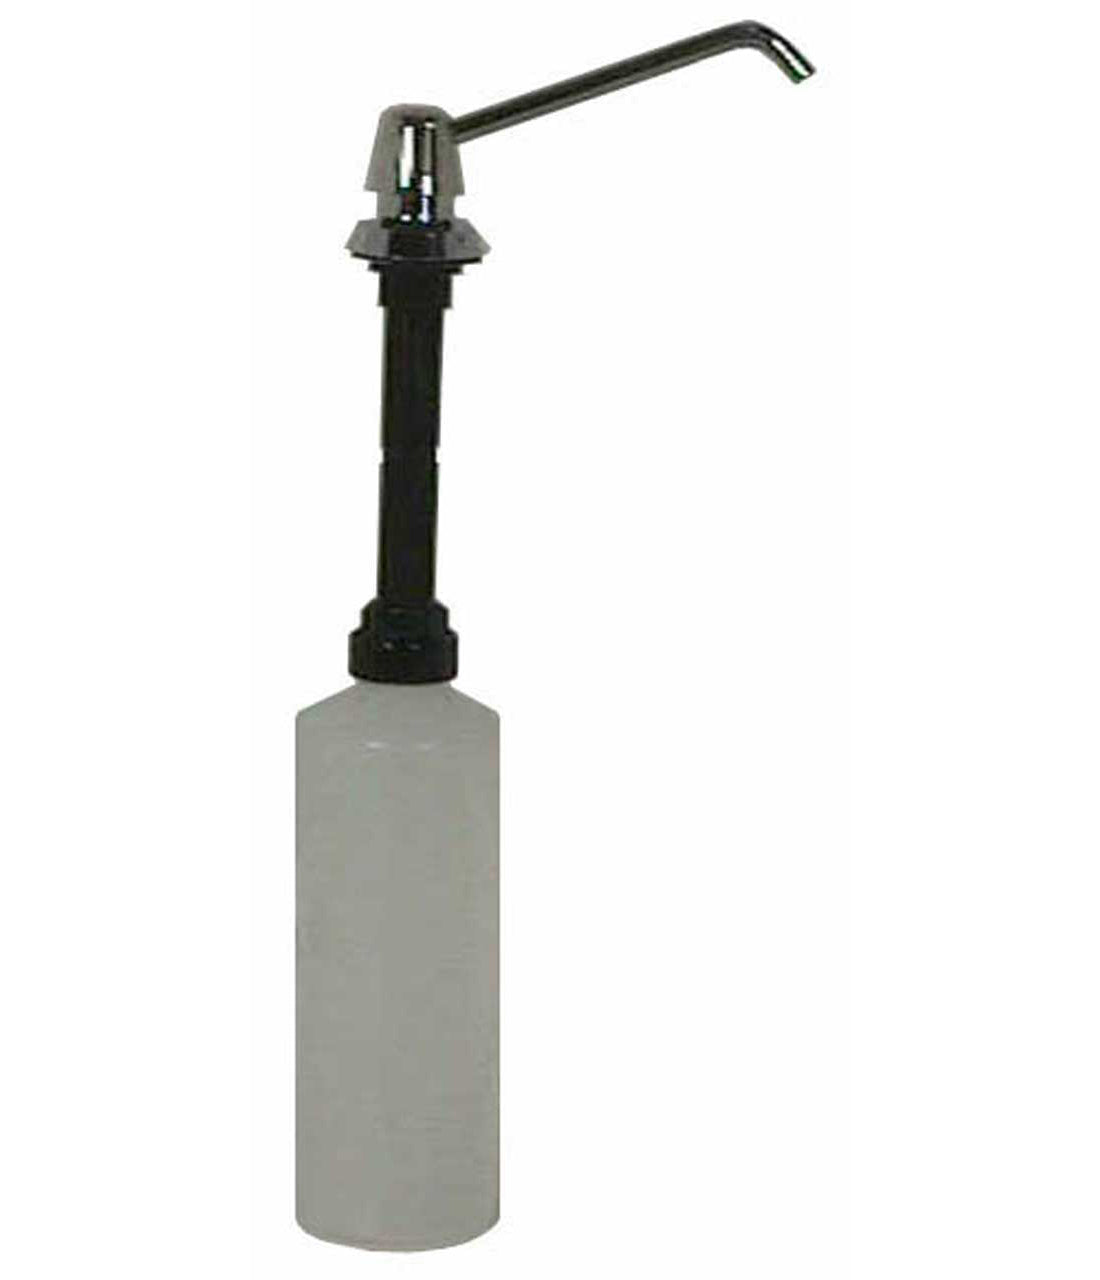 B-8226 - Bobrick 34oz (1L) Manual Top-Fill 6" spout Liquid Soap Dispenser